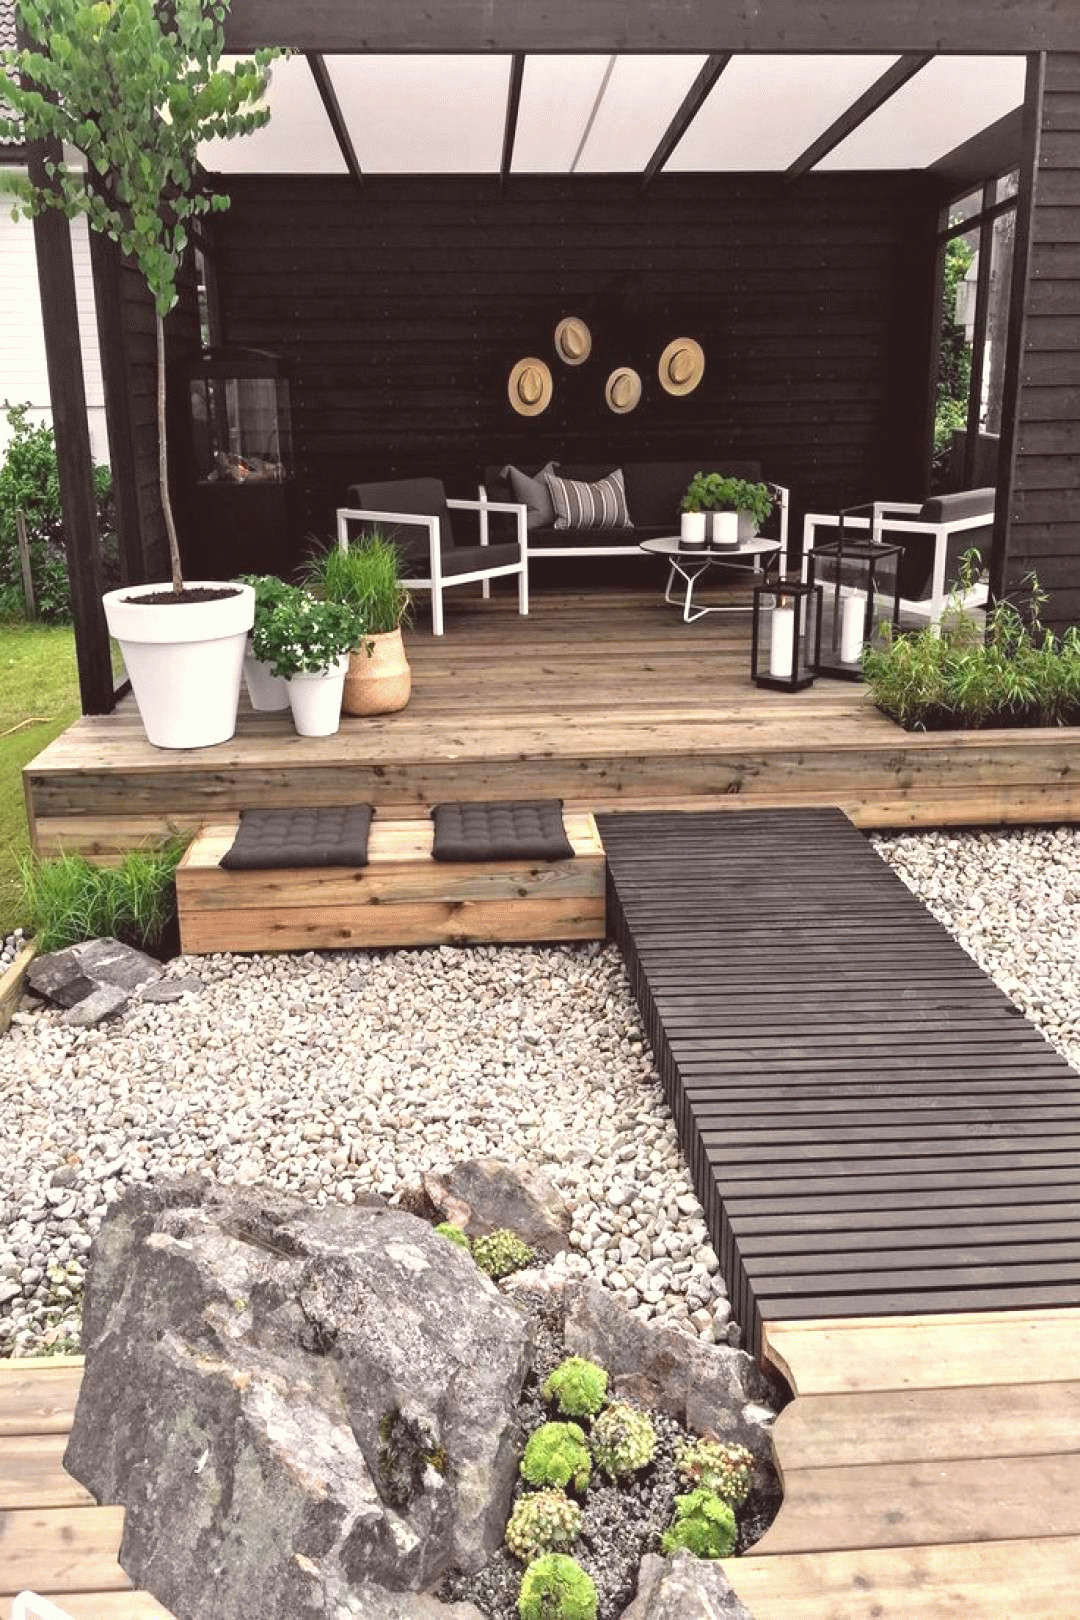 Comment Faire Un Jardin Zen - In 2020 | Small Yard ... dedans Comment Réaliser Un Jardin Zen